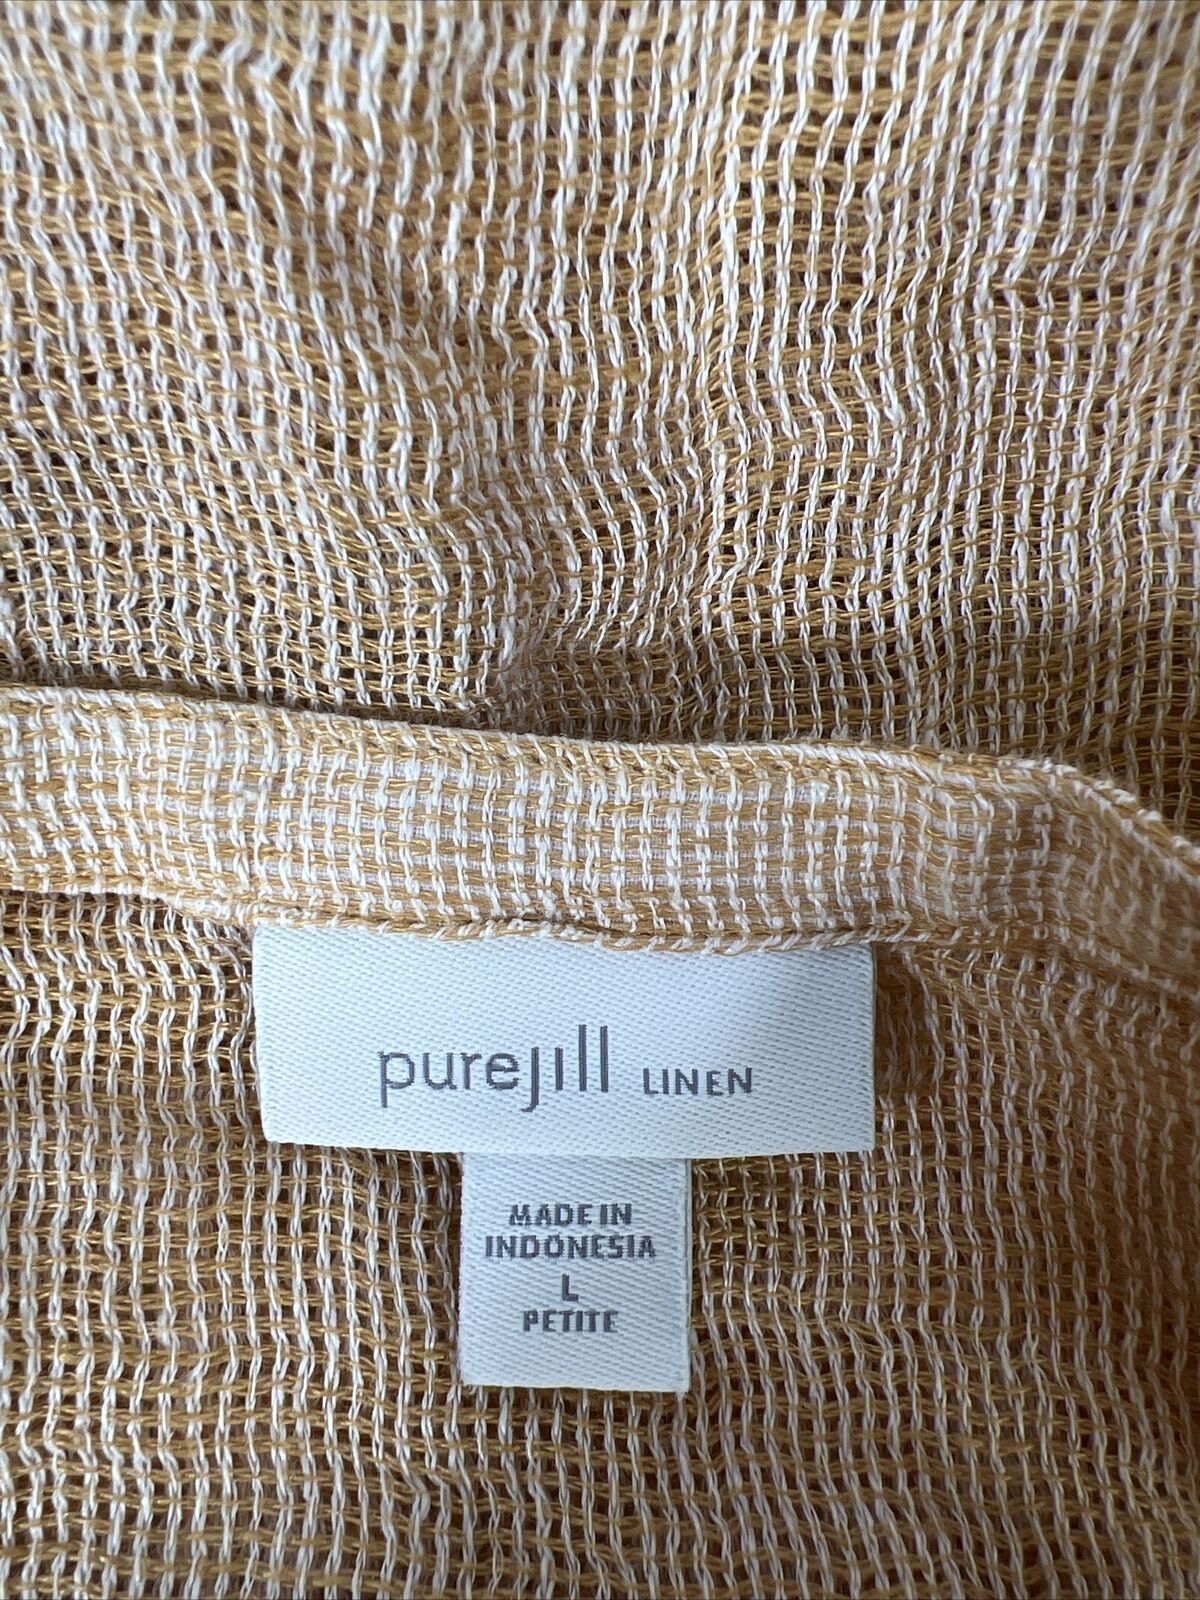 J. Jill Pure Women's Beige Linen Sheer Knit Top - Petite L